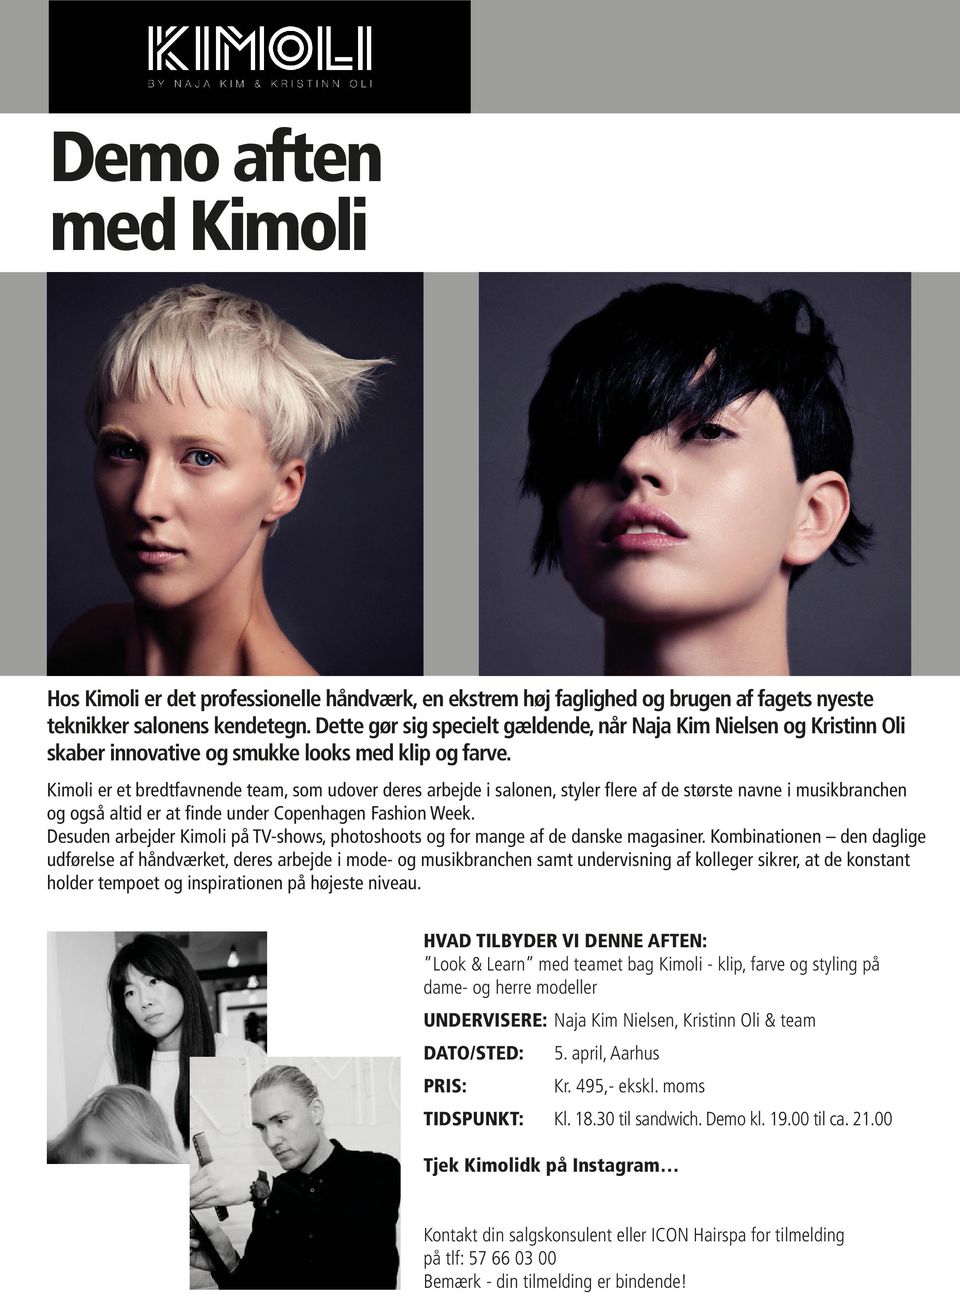 Kimoli er et bredtfavnende team, som udover deres arbejde i salonen, styler flere af de største navne i musikbranchen og også altid er at finde under Copenhagen Fashion Week.